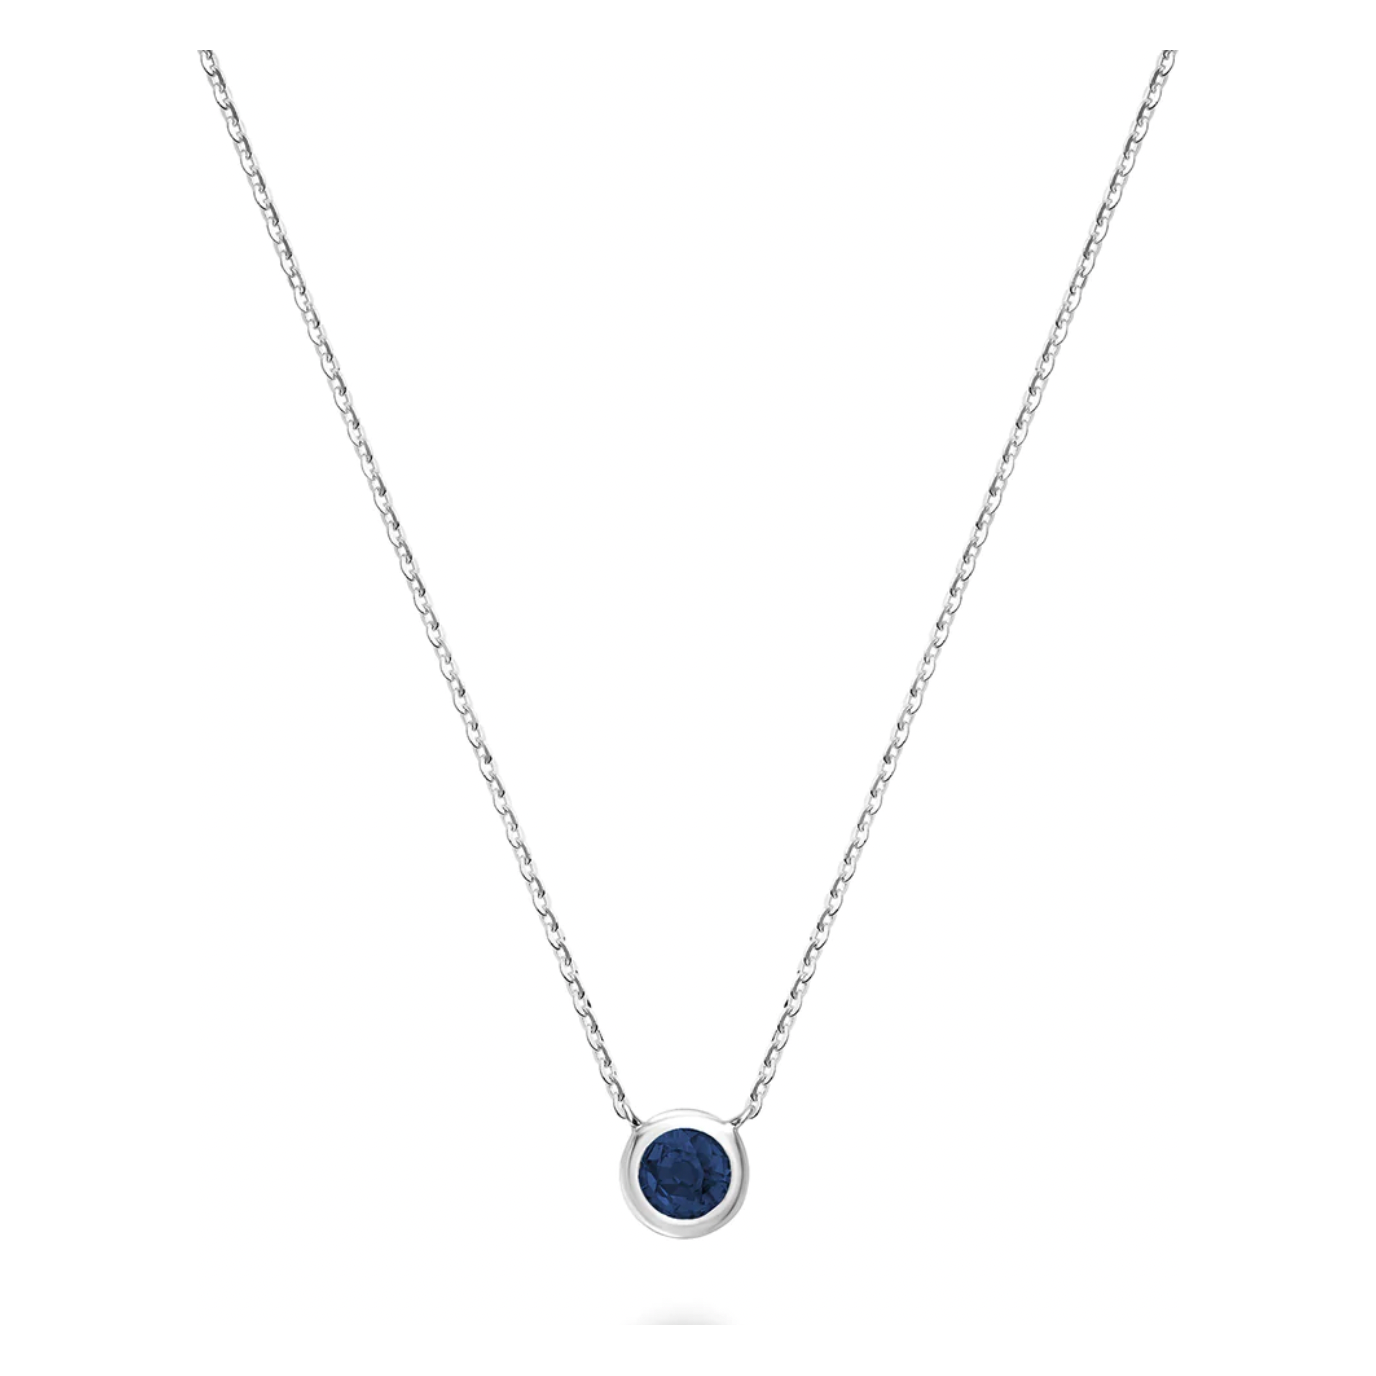 10 Karat Gold Bezel Blue Sapphire Necklace